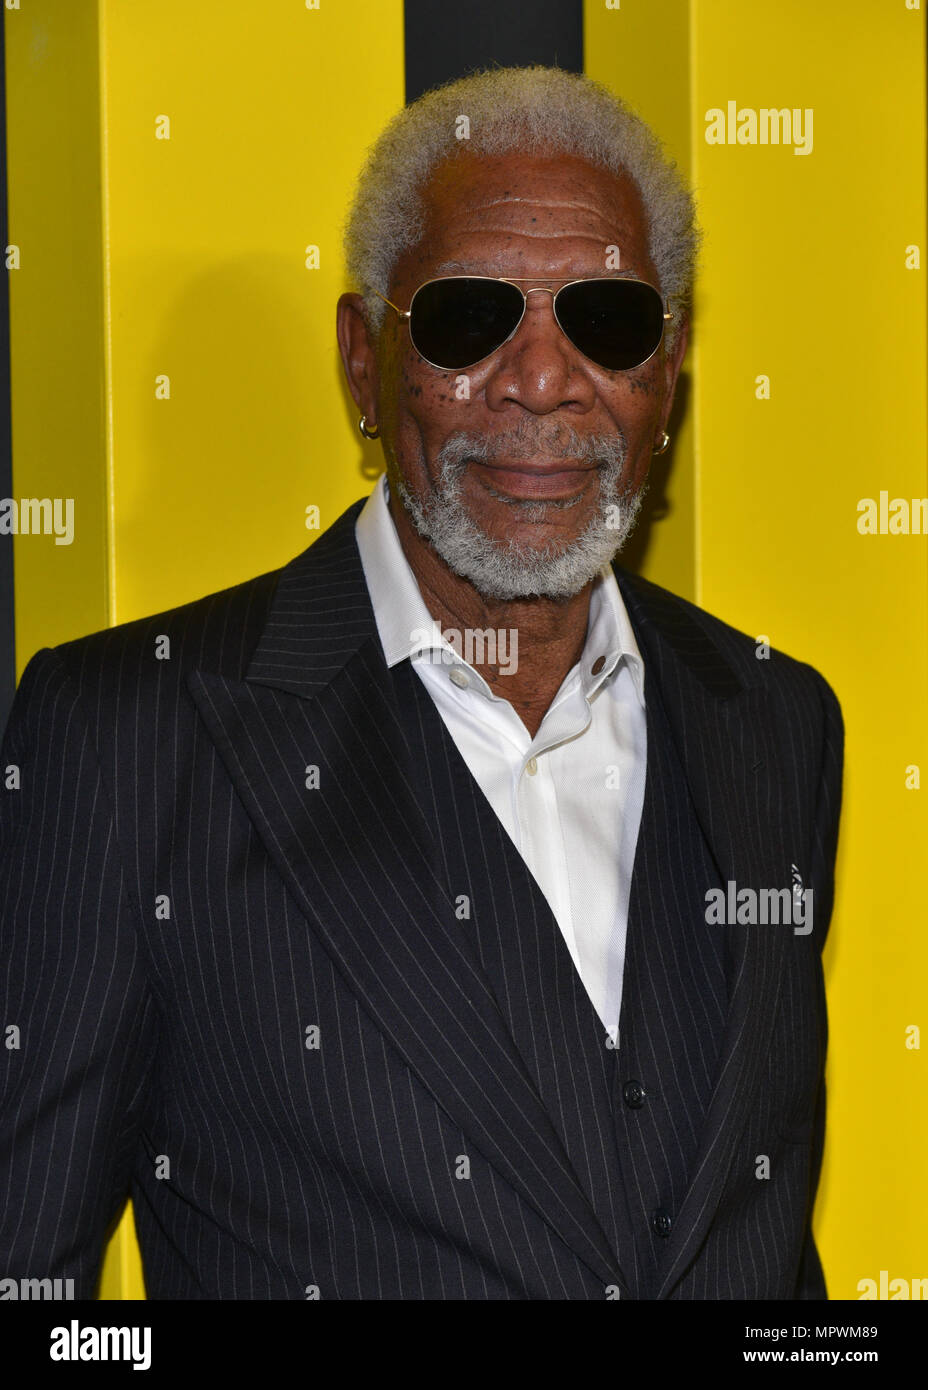 Morgan Freeman besucht die 2017 National Geographic weiter vorne am Jazz im Lincoln Center Frederick S. Rose Hall am 19. April 2017 in New York Cit Stockfoto